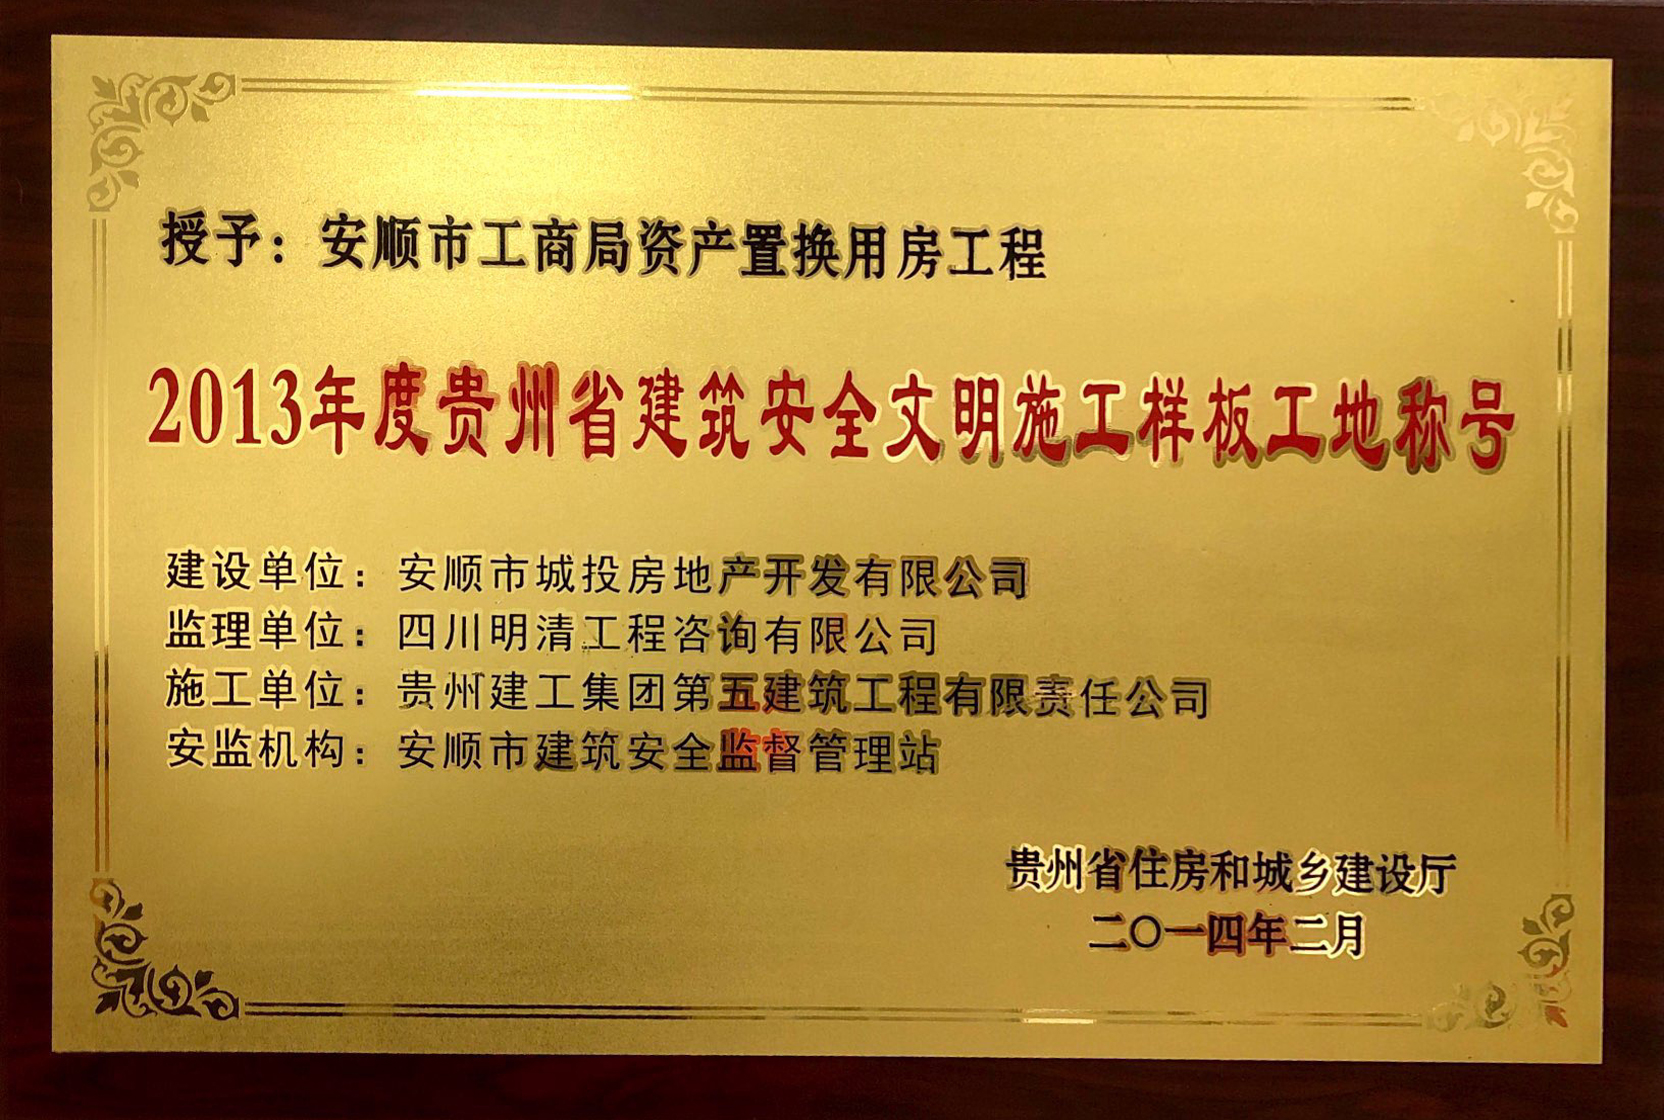 2013年度贵州省建筑安全文明施工样板工地称号